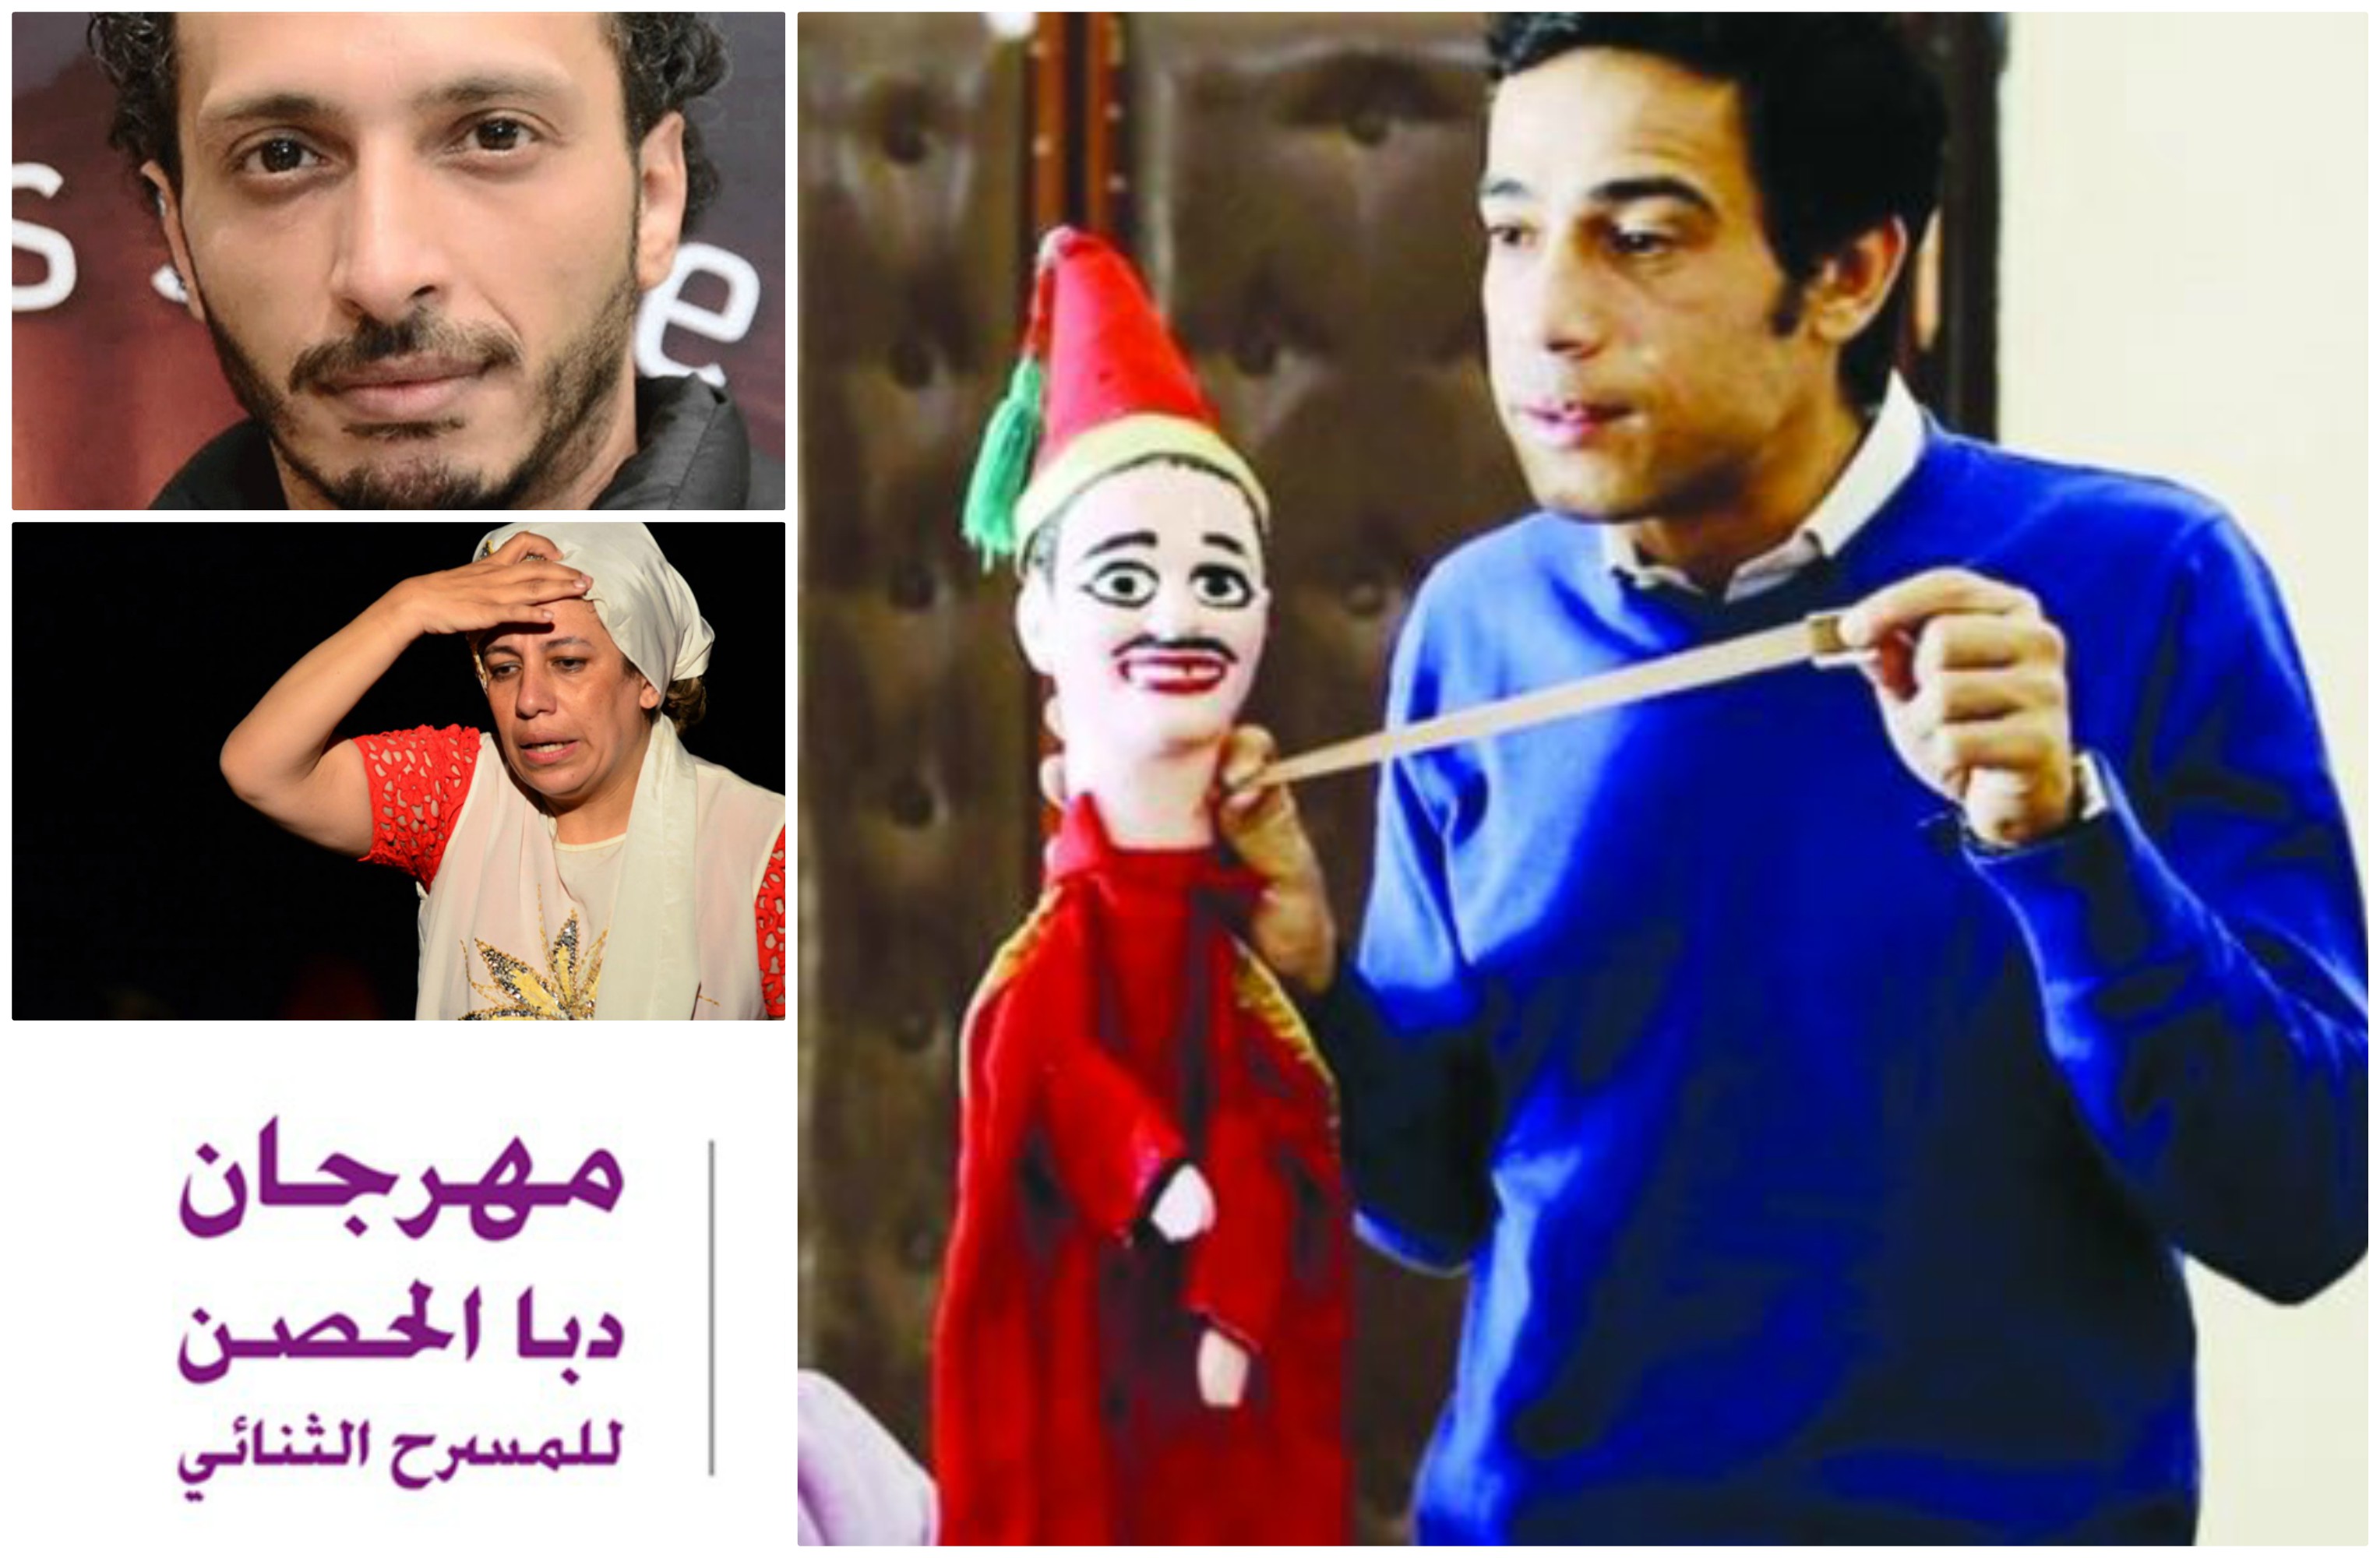 3 ورش في مجال المسرح المدرسي بمهرجان دبا الحصن للمسرح الثنائي